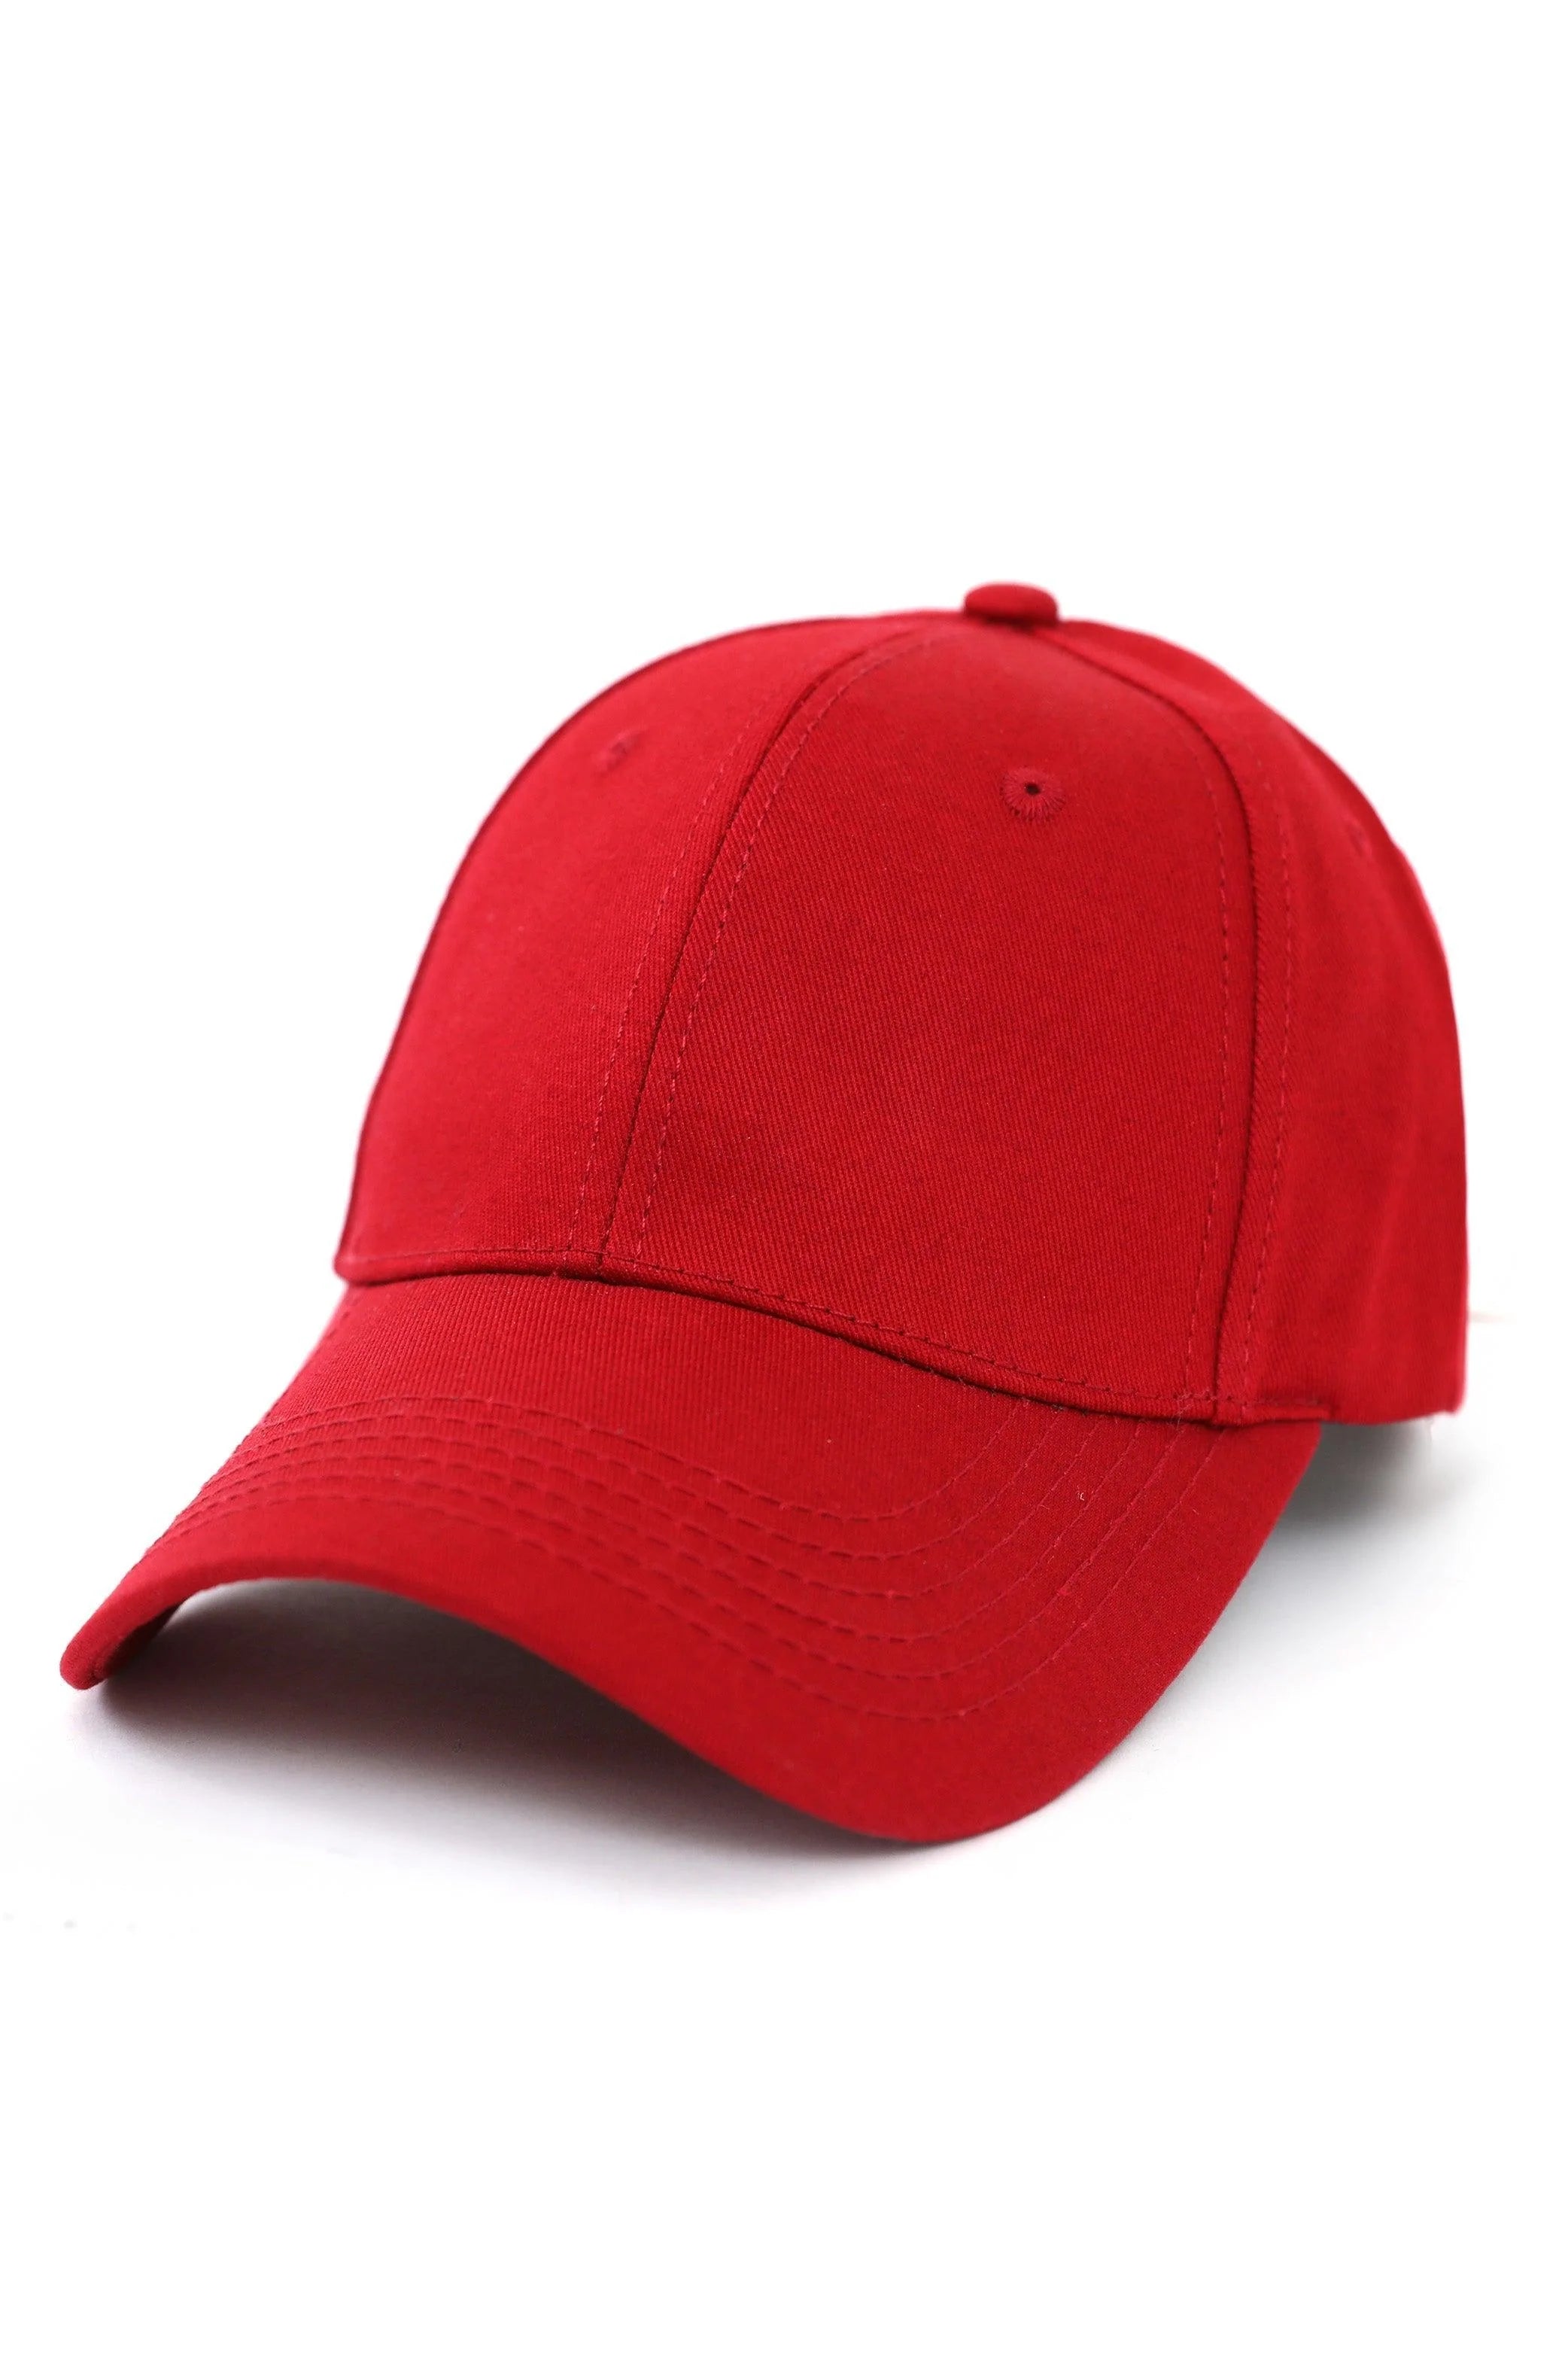 BASEBALL CAP – Lama Retail